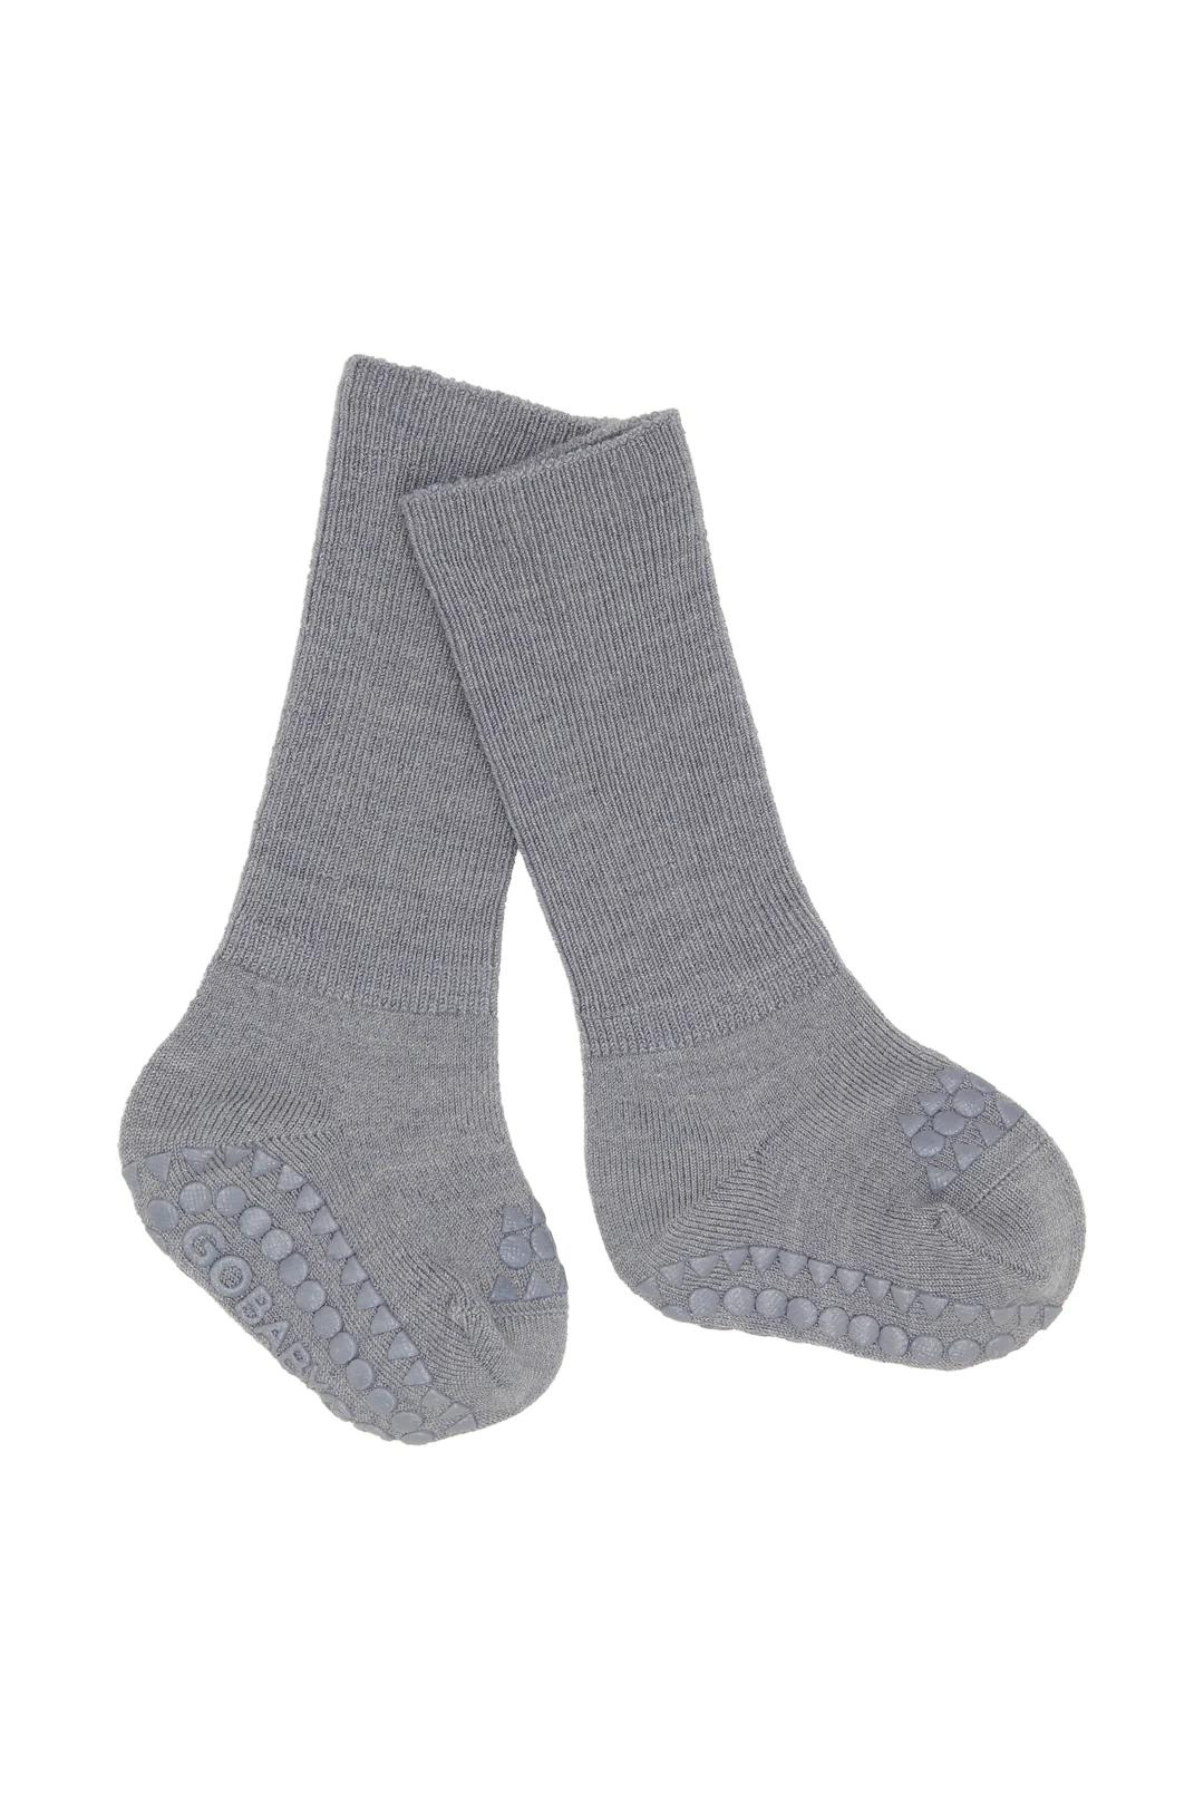 Stopper Socken aus Merinowolle | verschiedene Farben